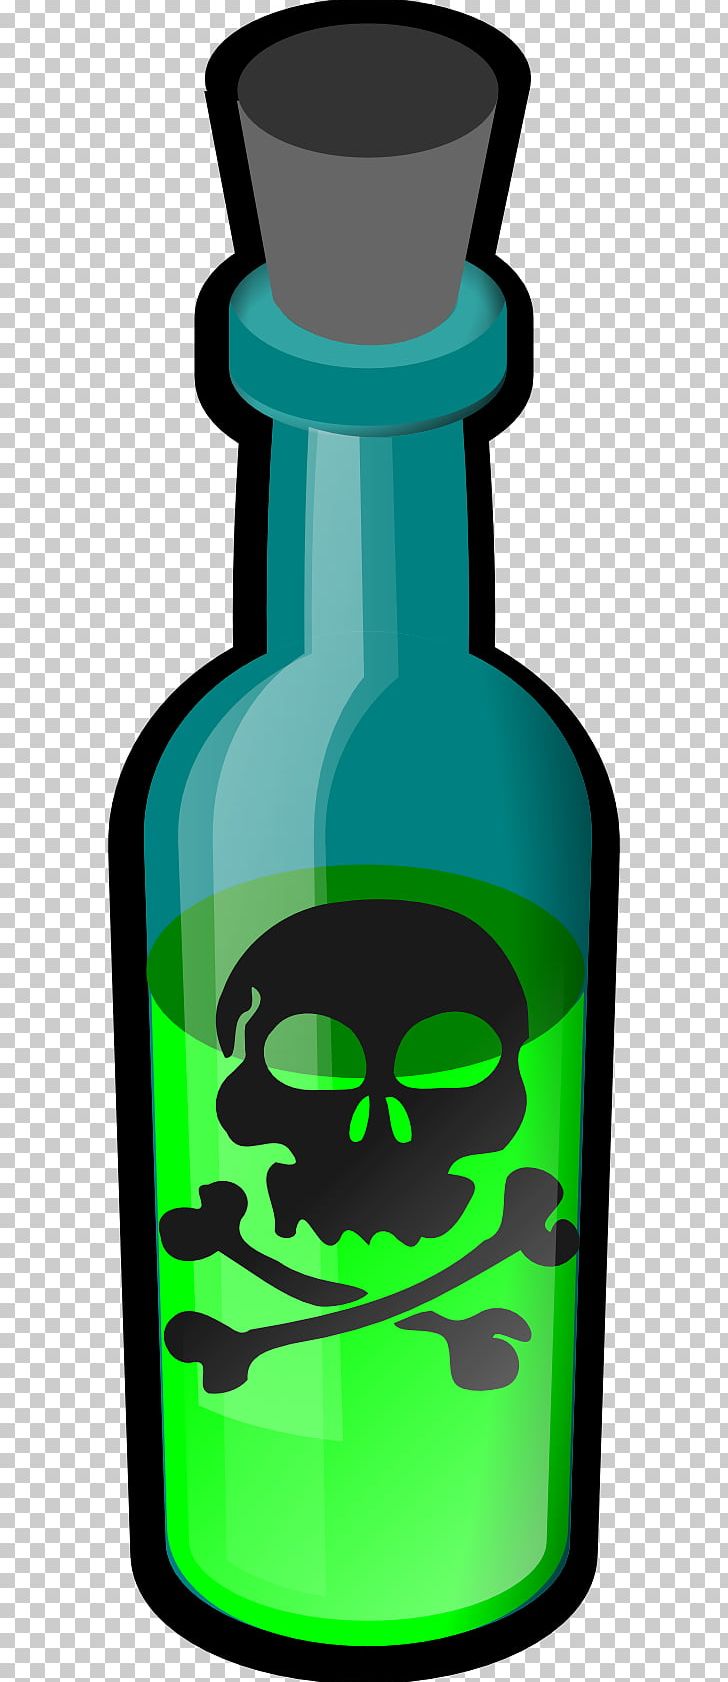 Skull And Crossbones Poison Human Skull Symbolism PNG, Clipart, Bone, Bottle, Clip Art, Death, Drinkware Free PNG Download